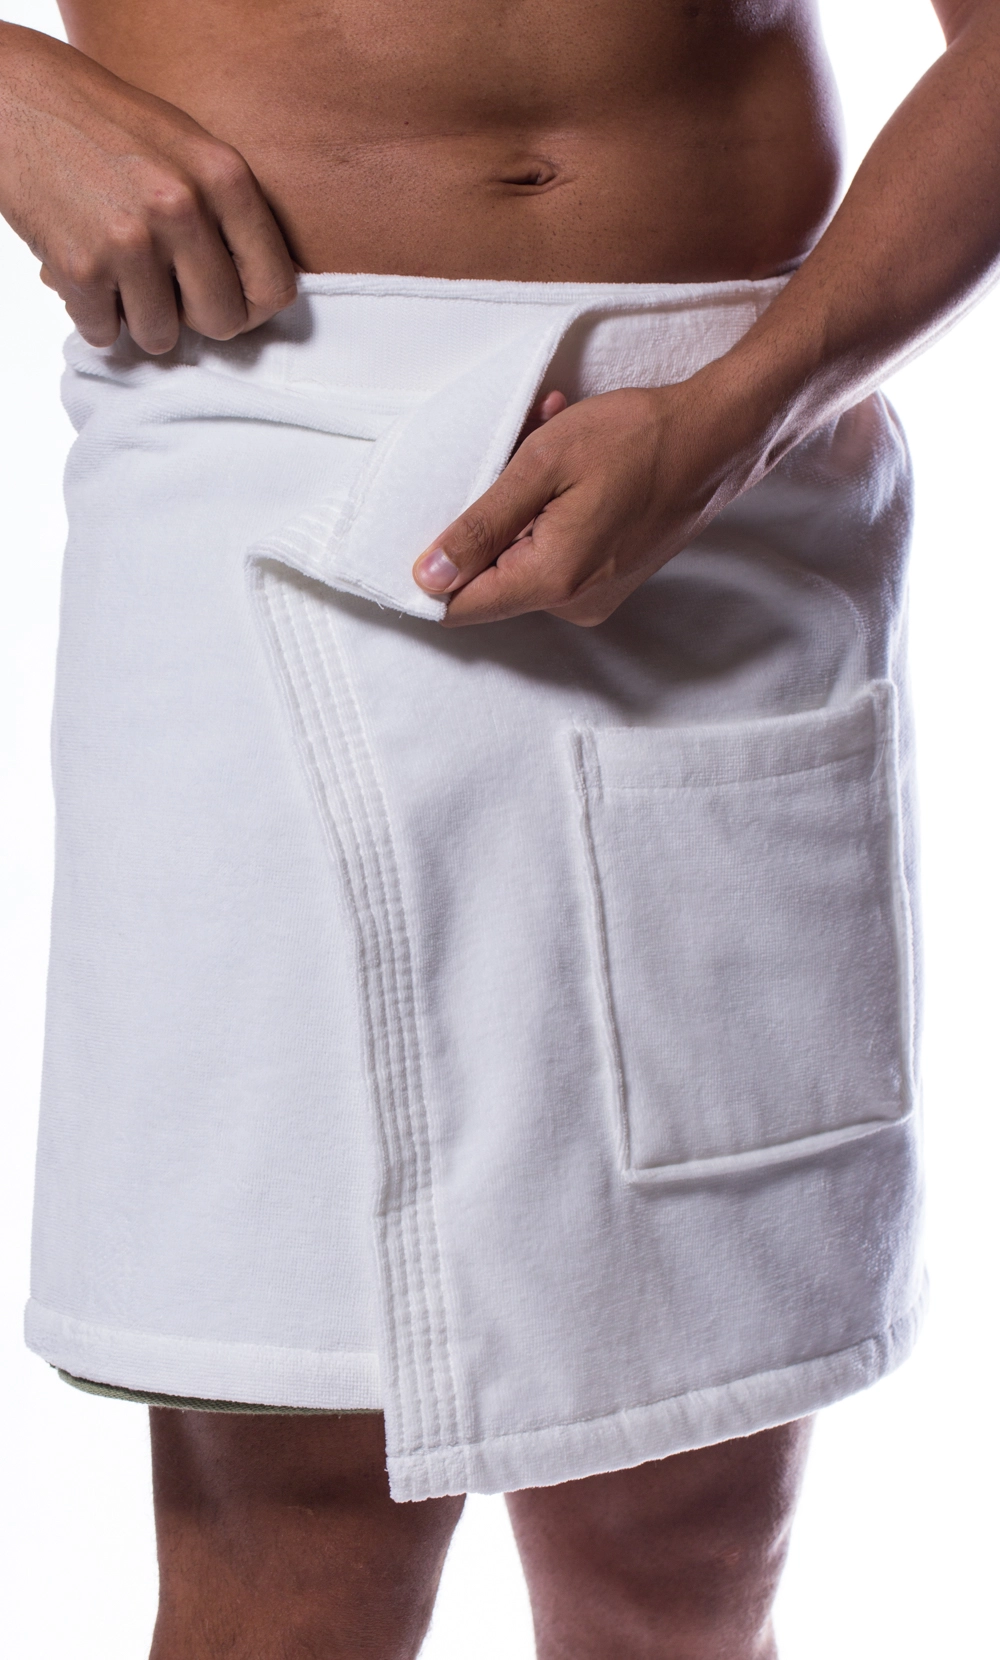 https://robemart.com/images/thumbnails/detailed/8/Cotton-White-Terry-Velour-Cloth-Spa-Wrap-Bath-Towel-Wrap-Mens-19_rent-0z.webp